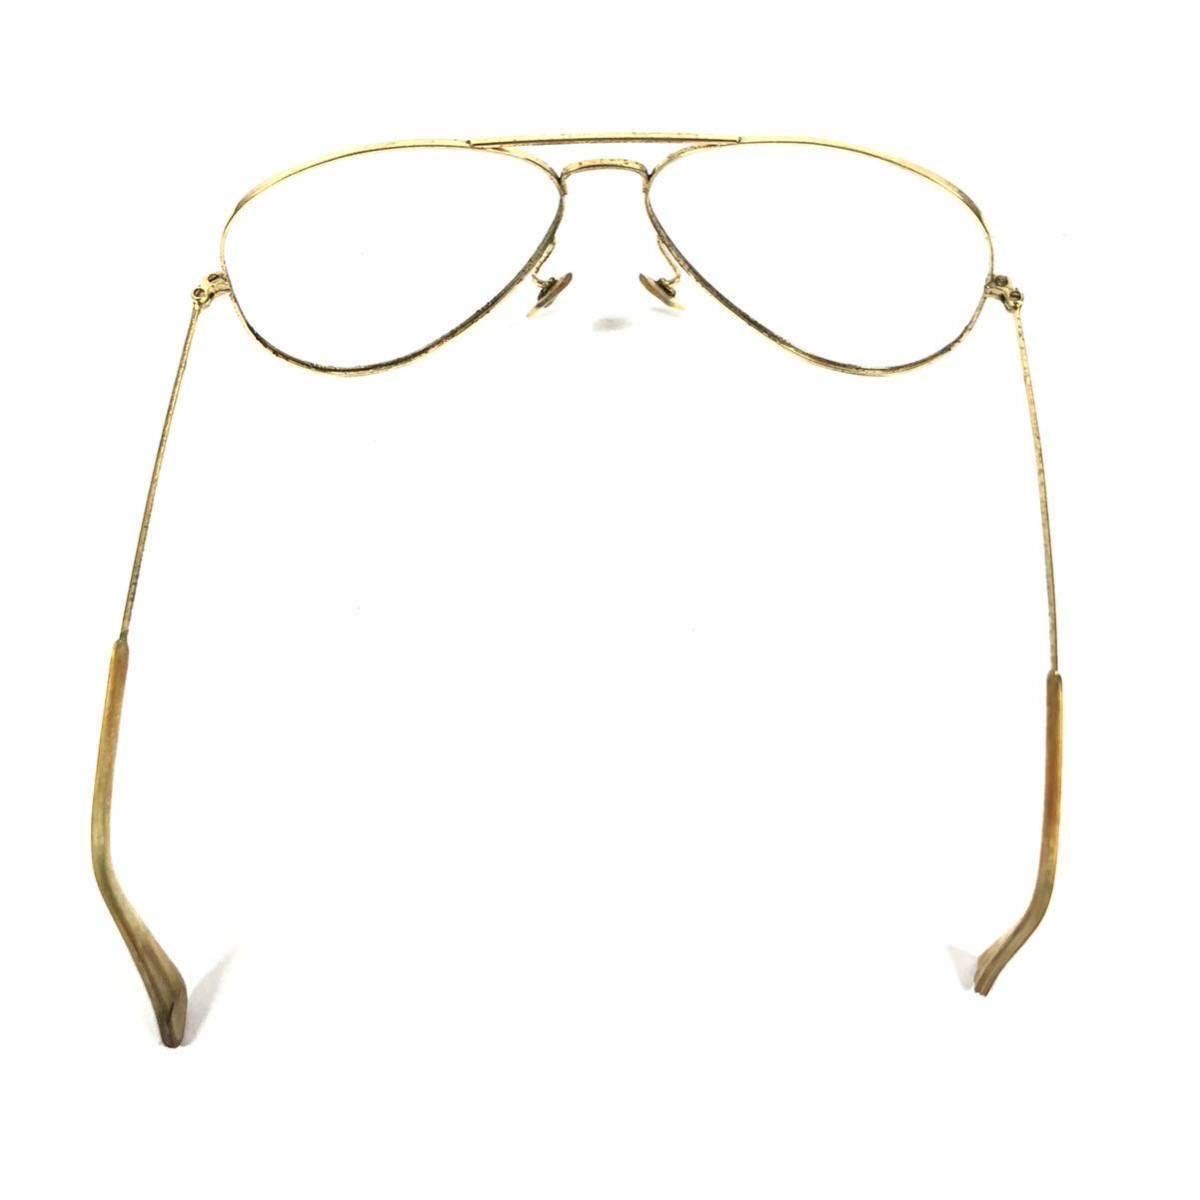 [ RayBan ] подлинный товар Ray-Ban date очки B&L авиатор type Teardrop type солнцезащитные очки рама очки мужской женский USA производства стоимость доставки 520 иен 